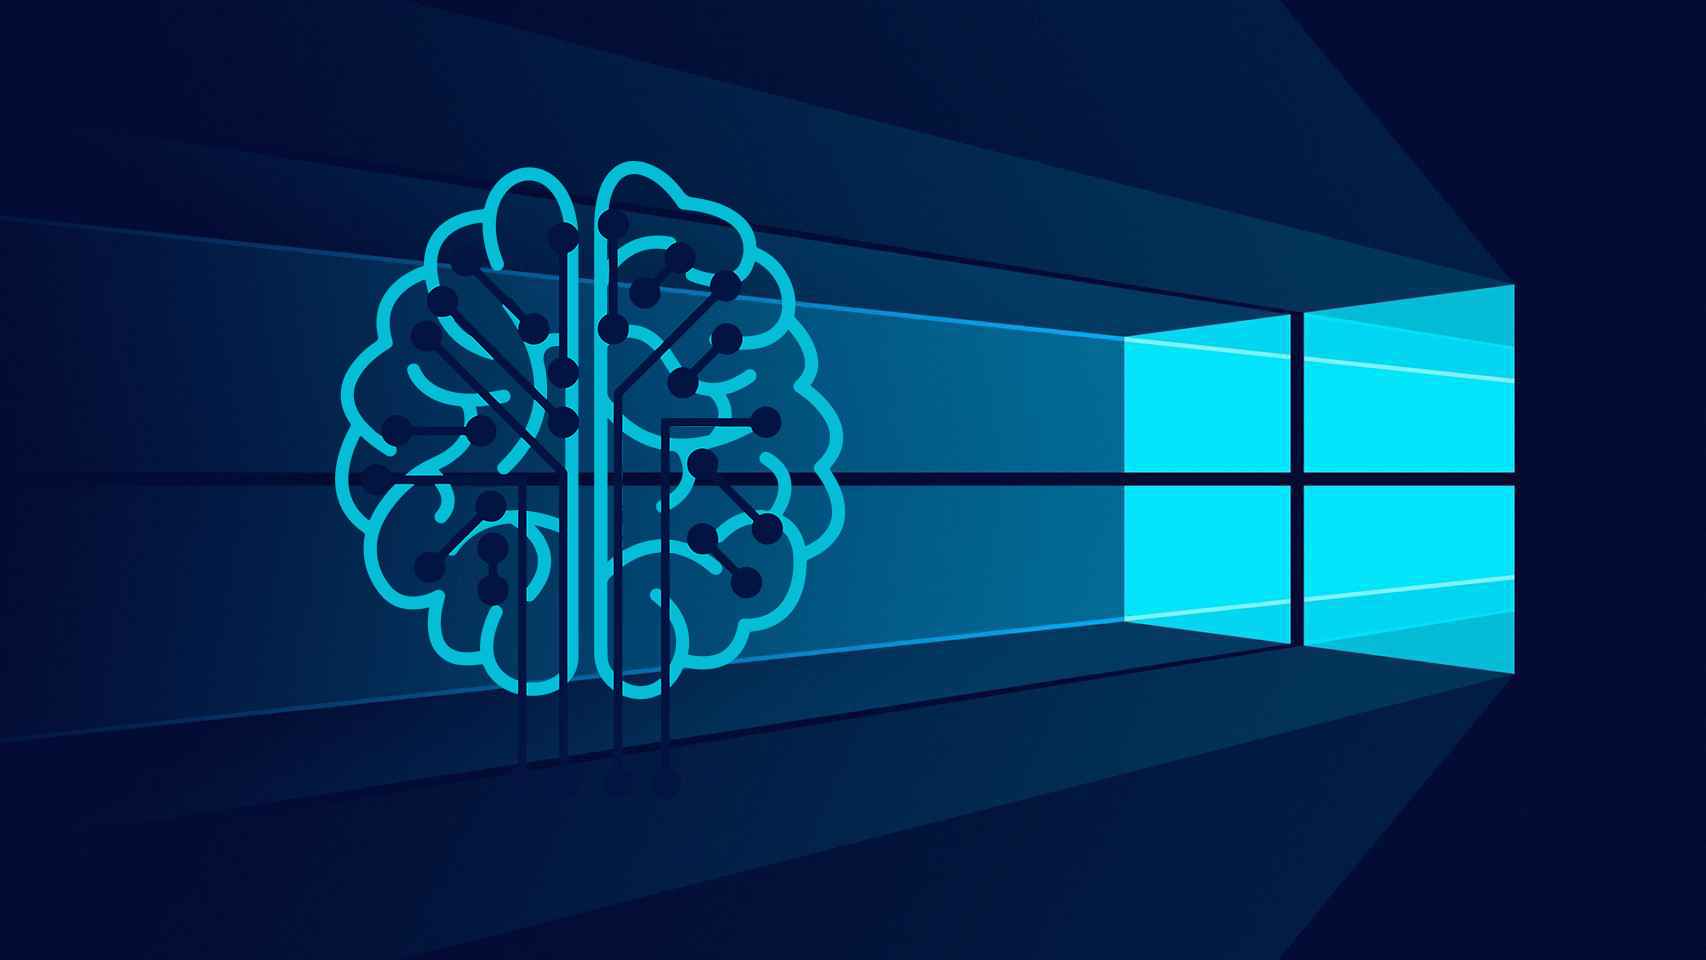 Wallpaper de Windows con un logo de inteligencia artificial.